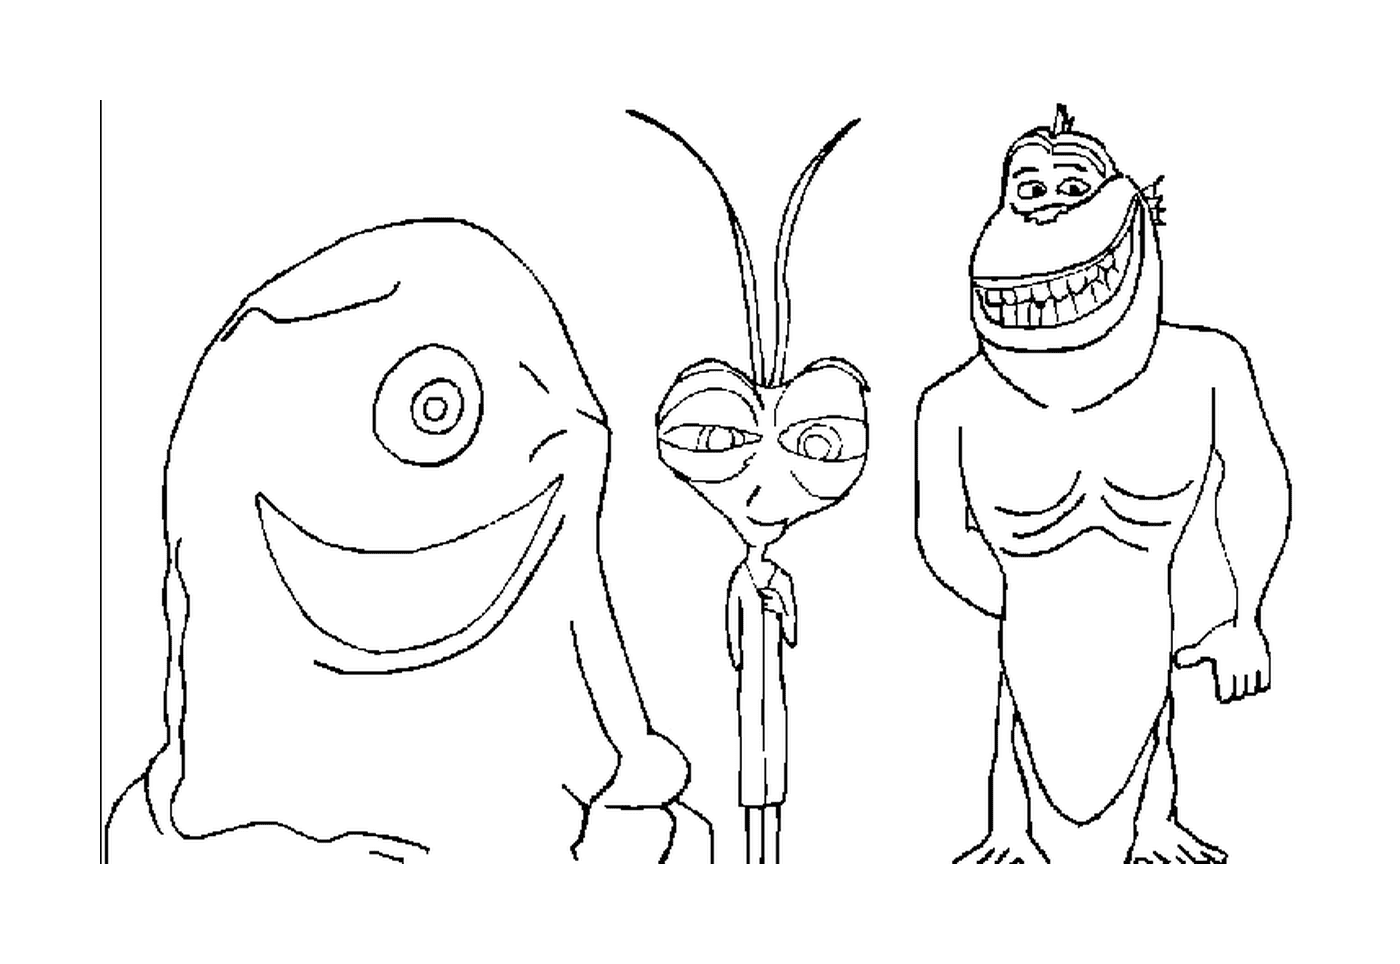  Personagens animados de grupo monstro 